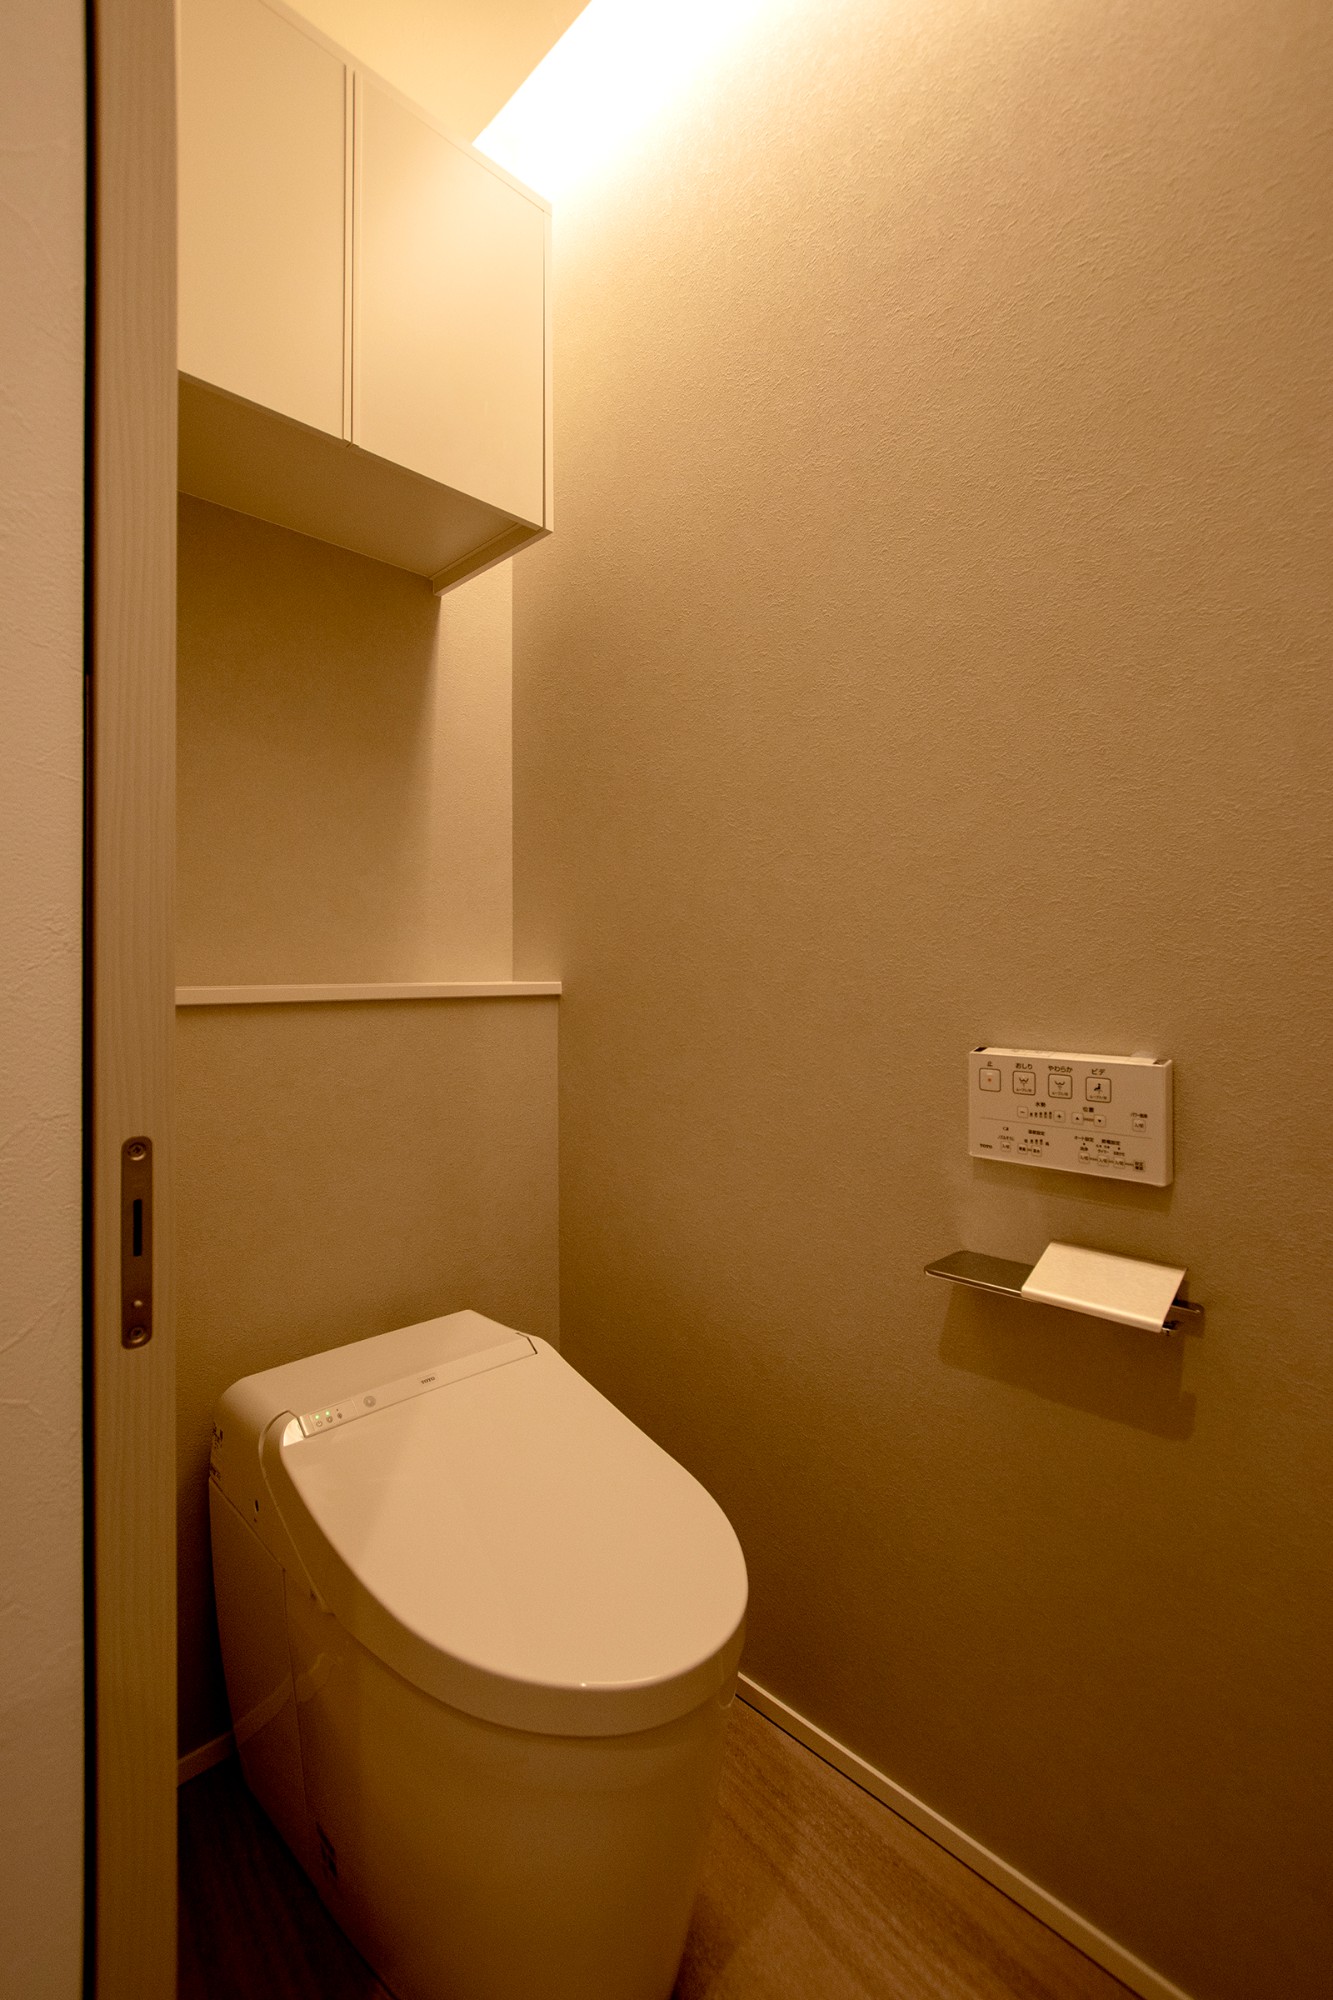 グレーホワイトのガルバと塗り壁で彩る「コの字型テラスと吹抜け」のある住まいのトイレ写真